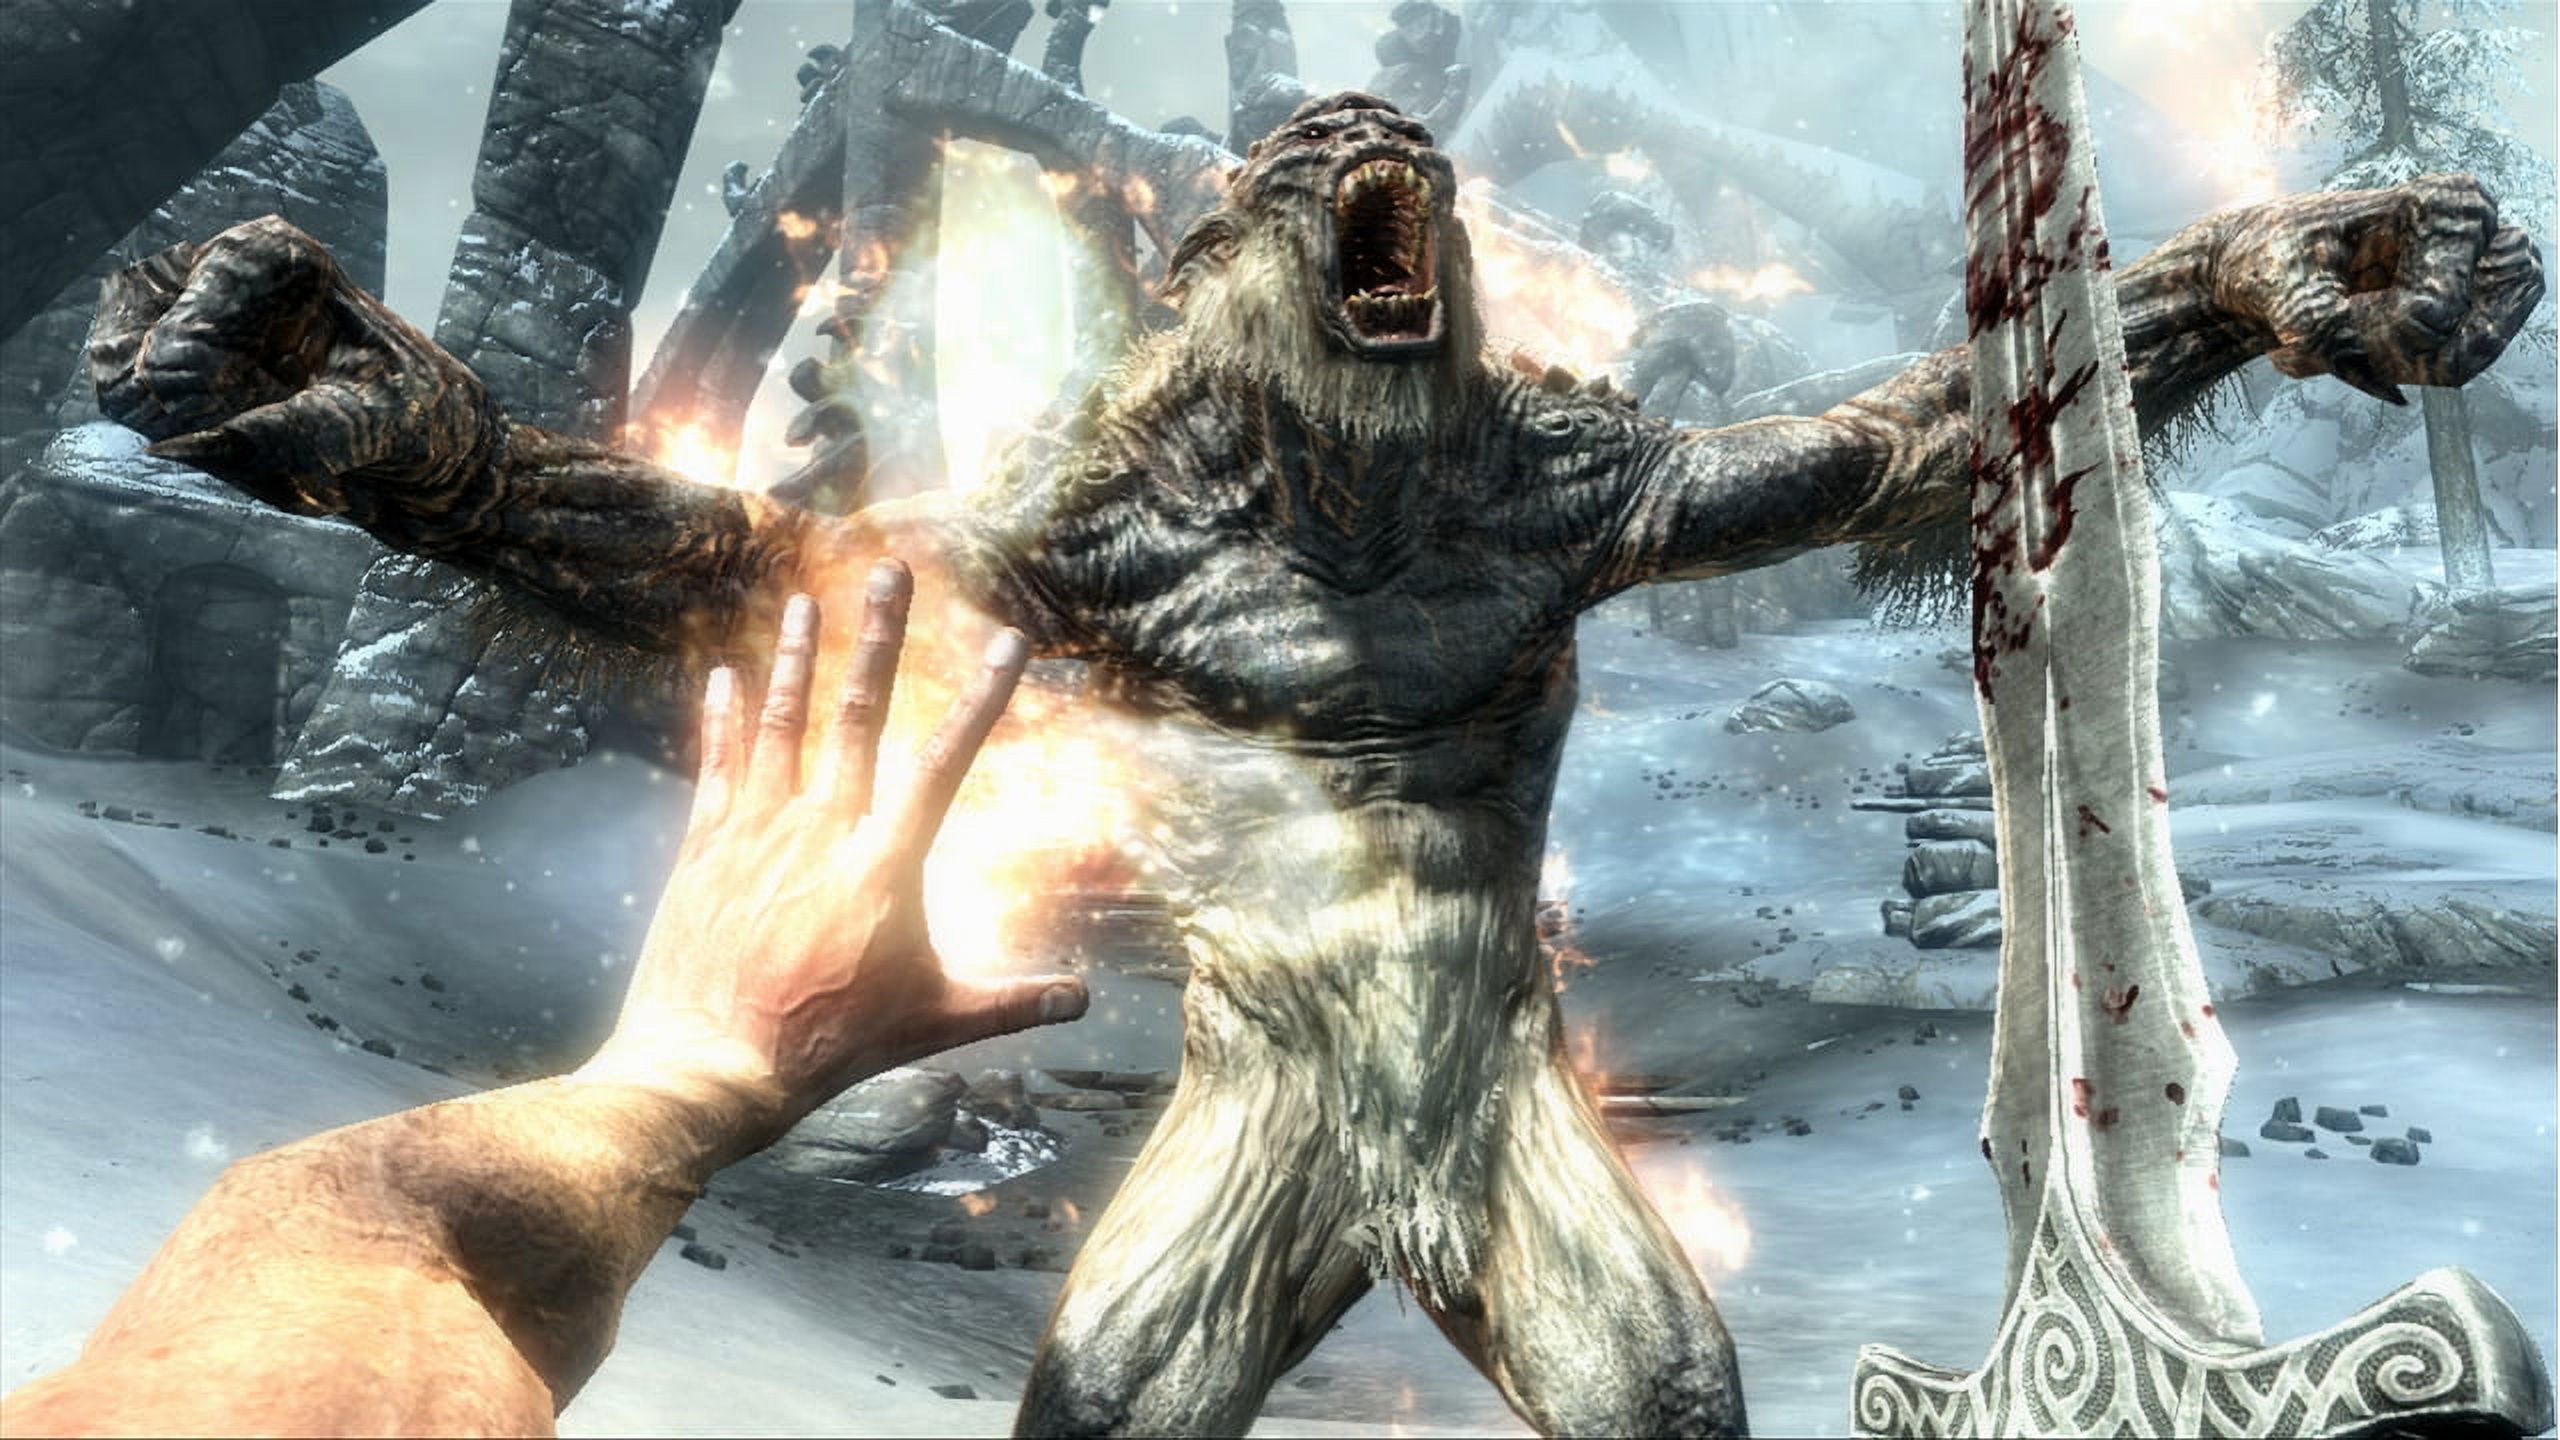 Elder Scrolls V: Skyrim (Xbox 360 / PS3 / PC) Bethesda Softworks - image 5 of 12